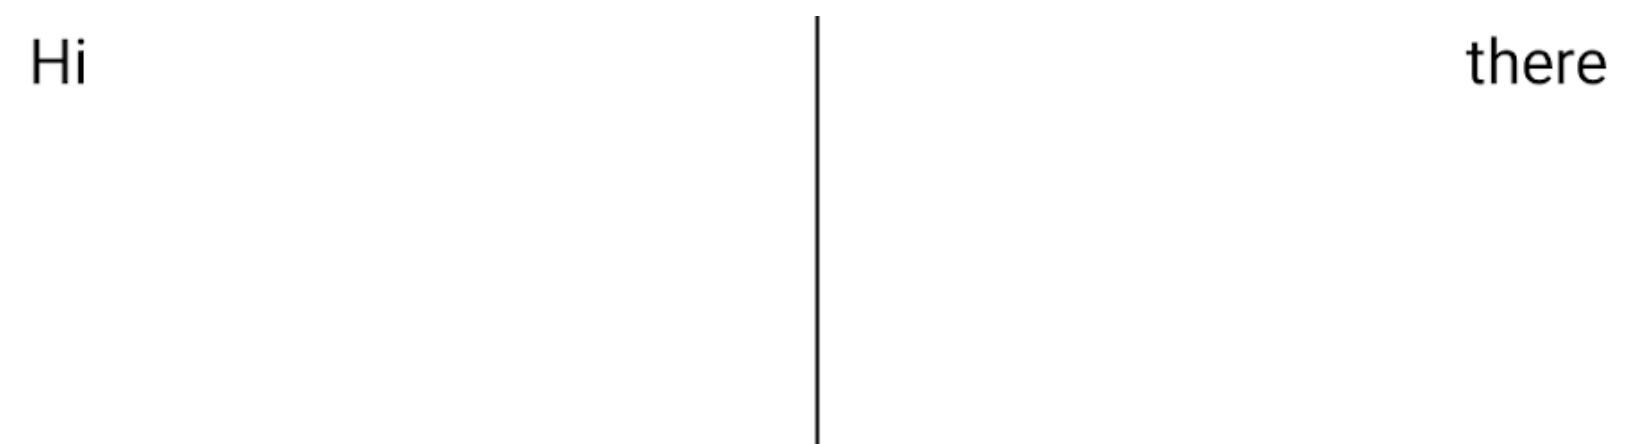 兩個文字元素並排顯示，中間有一個垂直的分隔線，一直延伸至文字底部以下